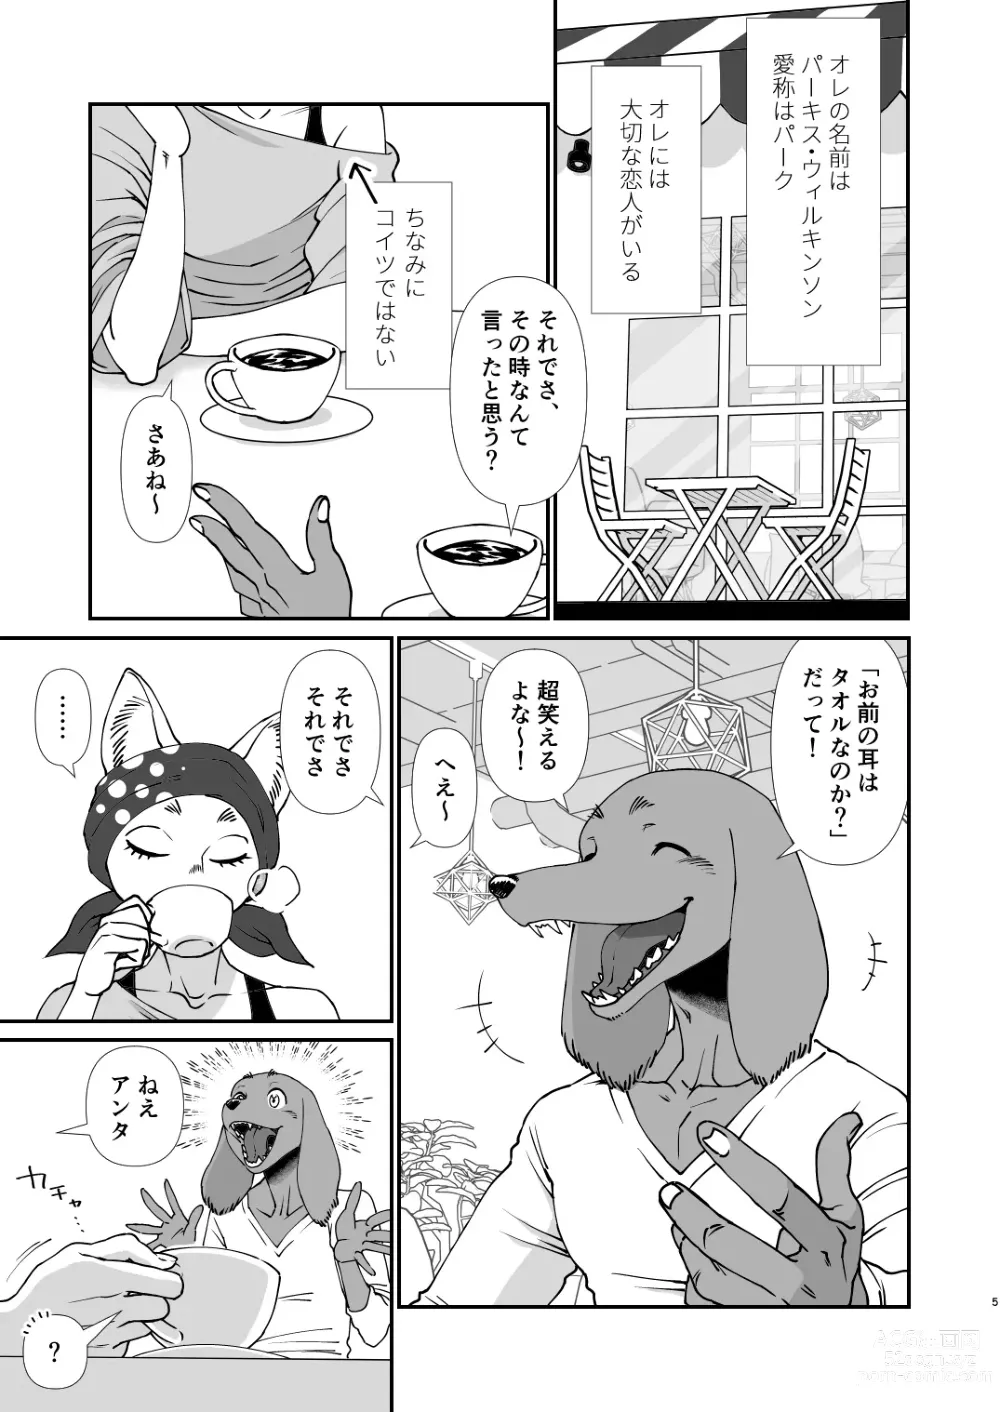 Page 3 of doujinshi Gakusei-kun to Hanaya-san Matome Hon!